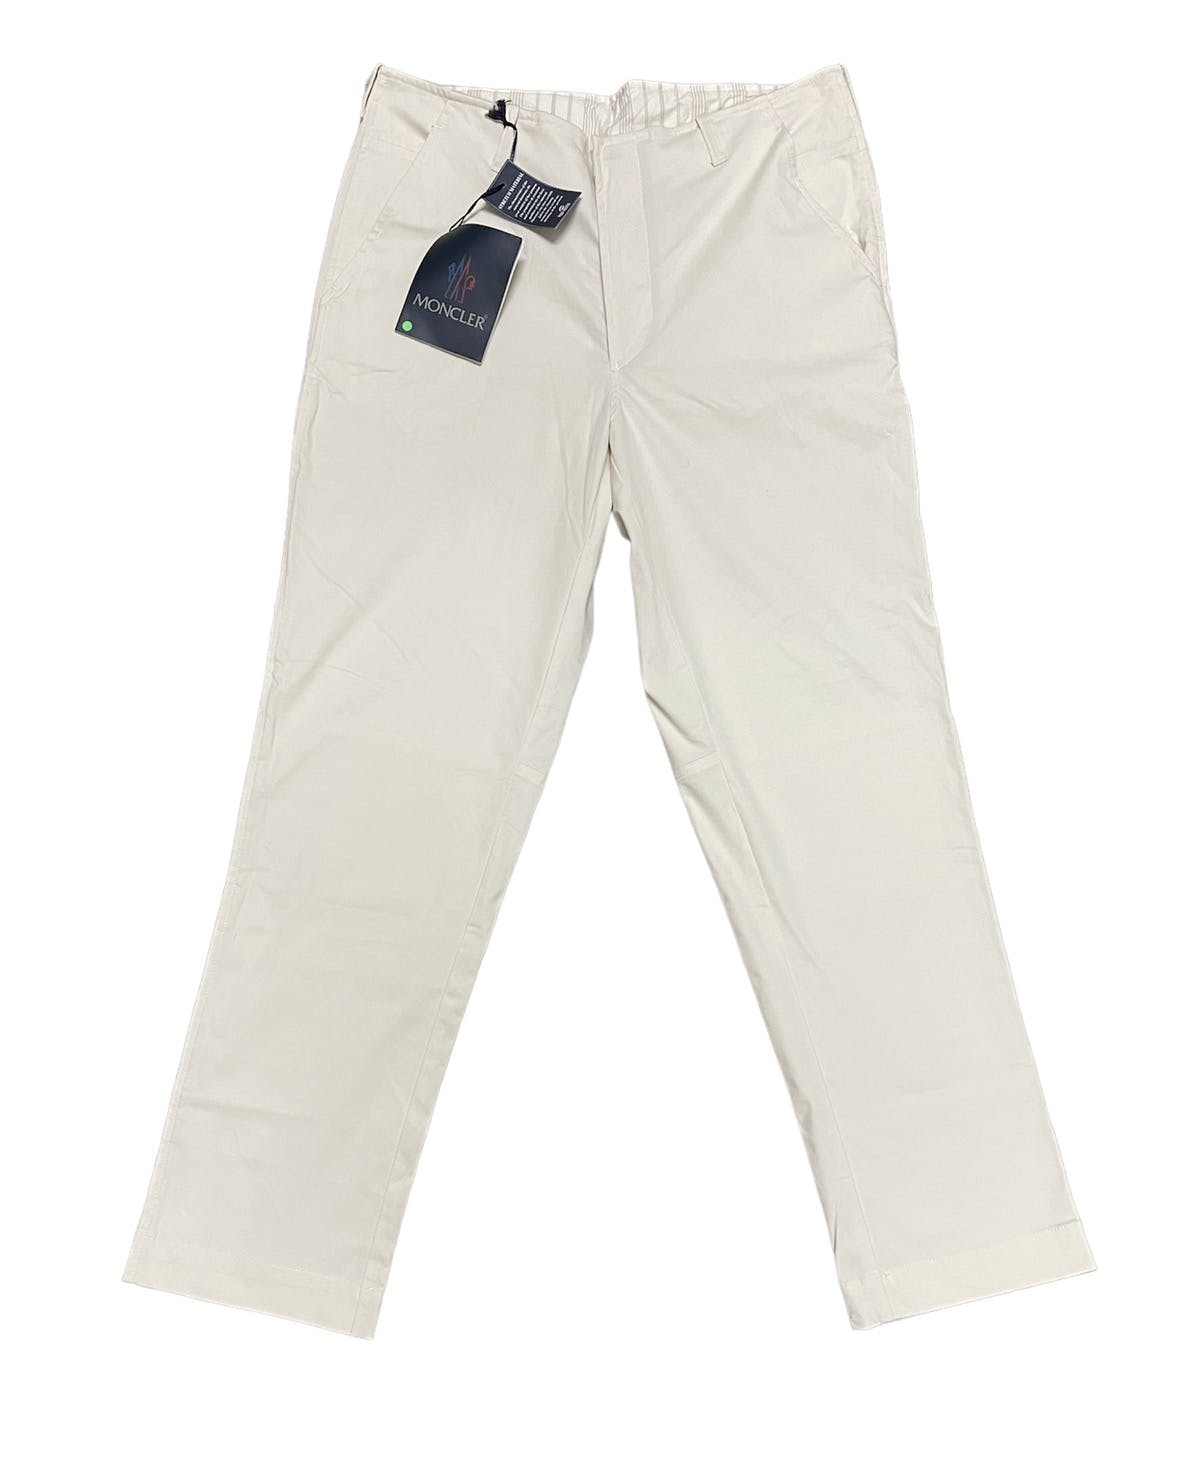 Vintage Moncler cotton wide pants - 1